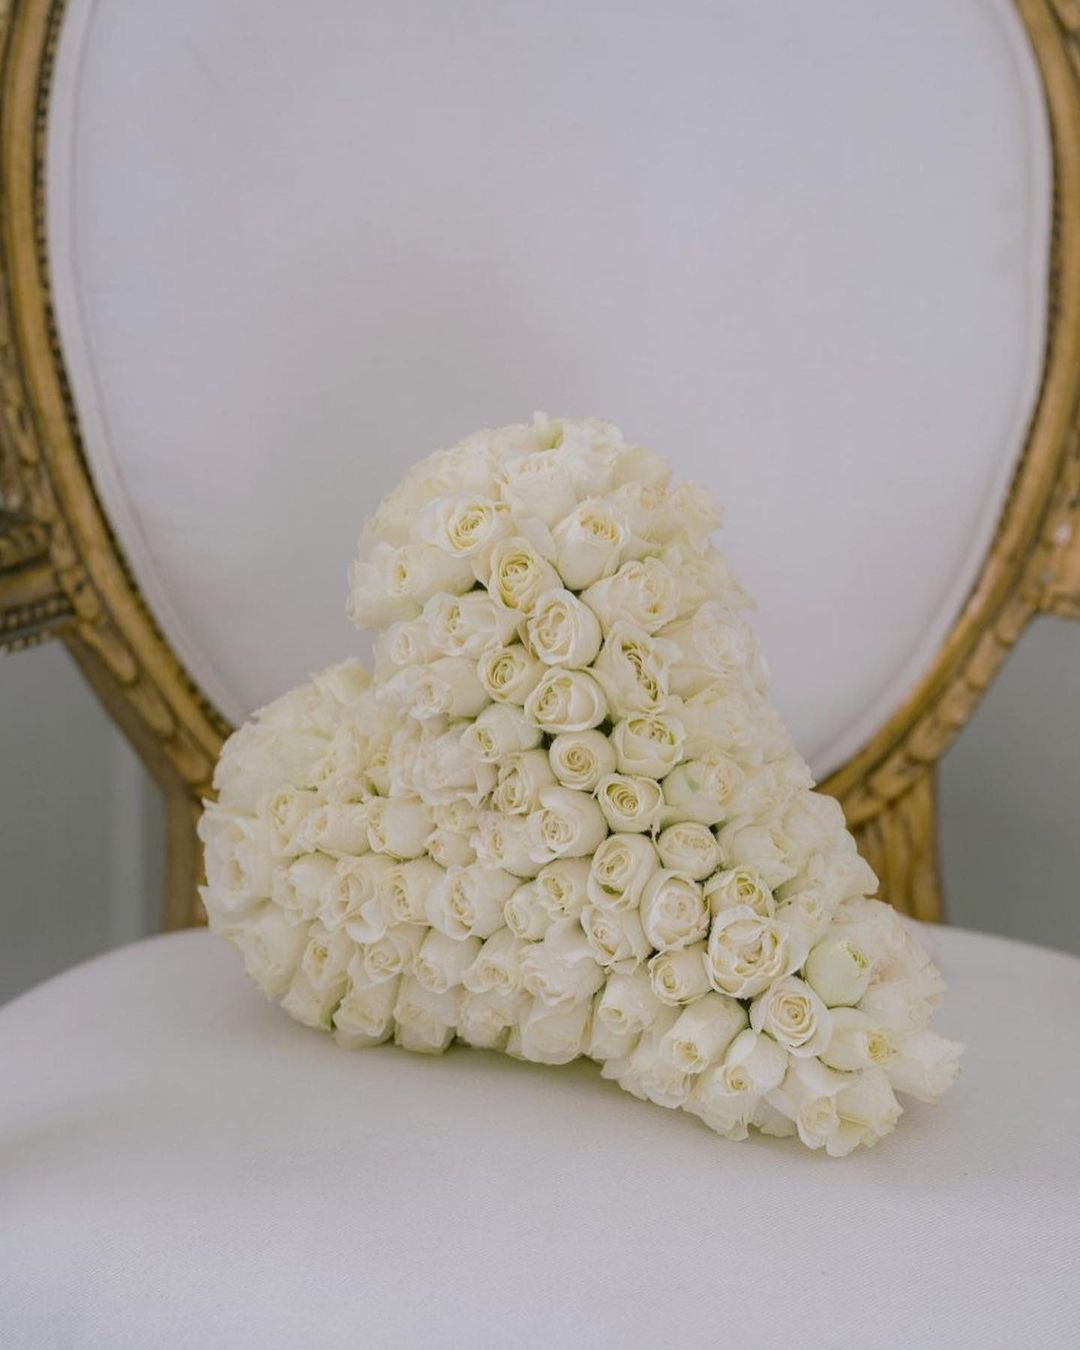 Мільйон білих троянд і марафон весільних суконь: деталі казкового весілля Періс Гілтон ФОТО